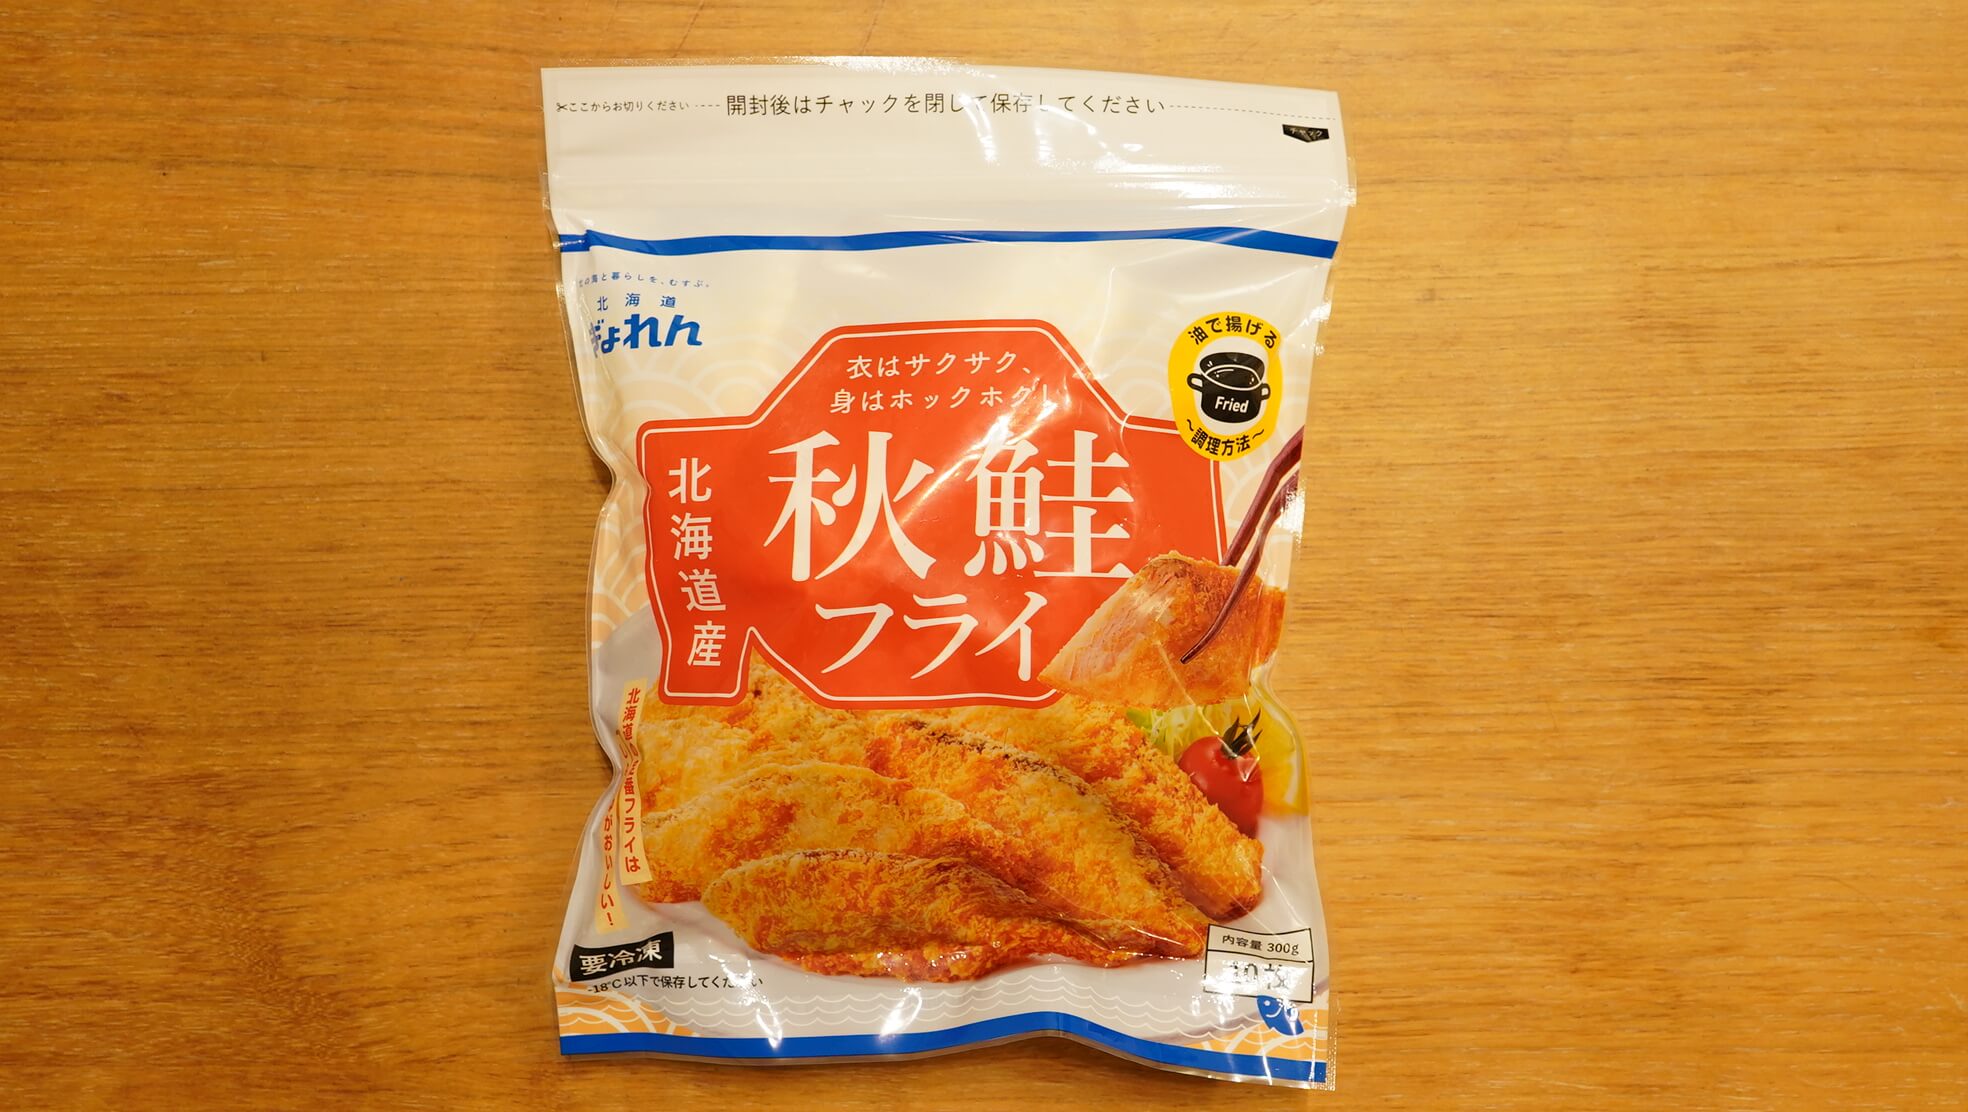 生協宅配で注文できる北海道漁連「秋鮭フライ」のパッケージ写真